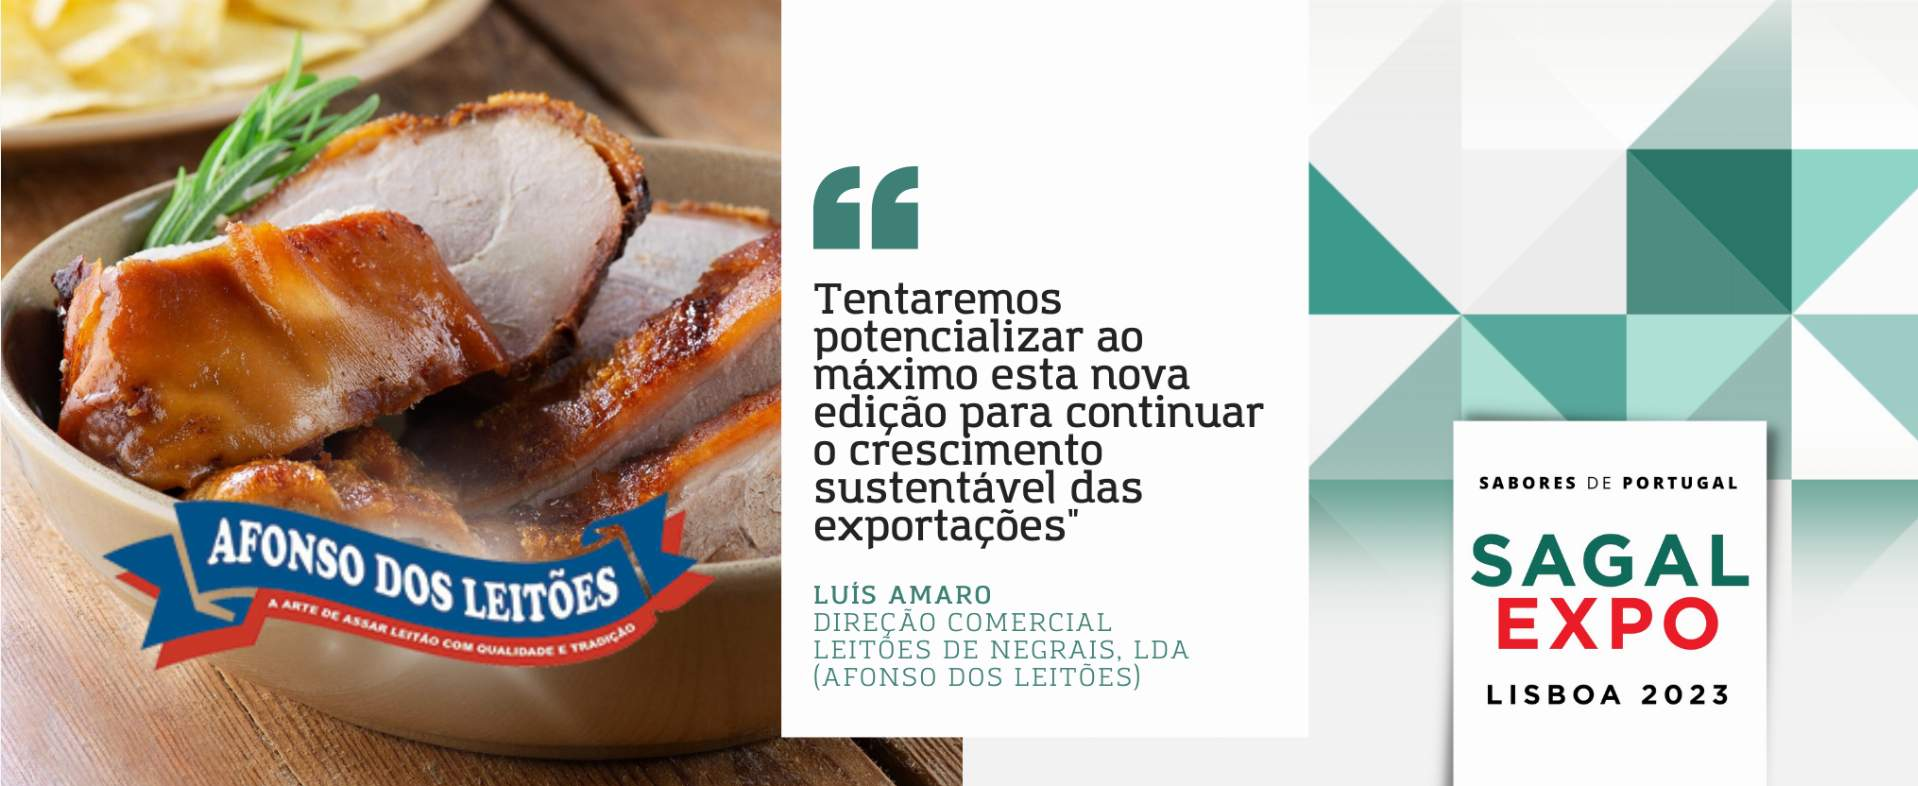 Afonso dos Leitões: “Tentaremos potencializar ao máximo esta nova edição para continuar o crescimento sustentável das exportações”